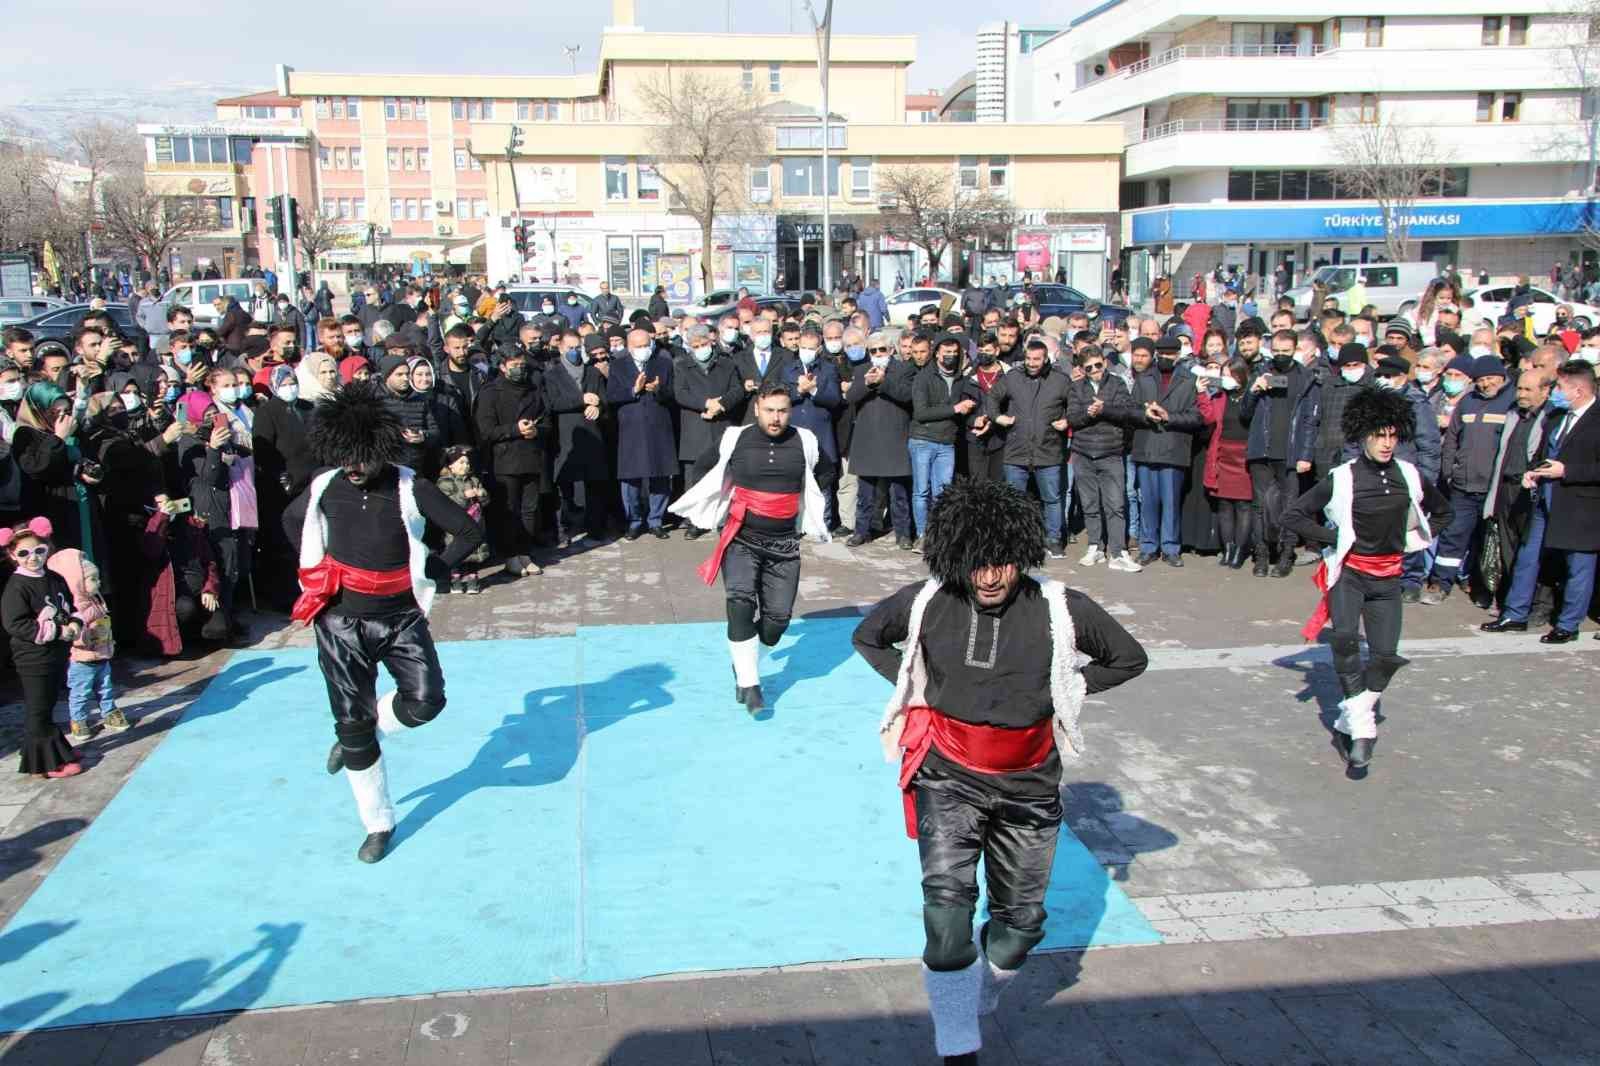 Erzincan Kültür ve Sanat Günleri etkinlikleri devam ediyor #erzincan